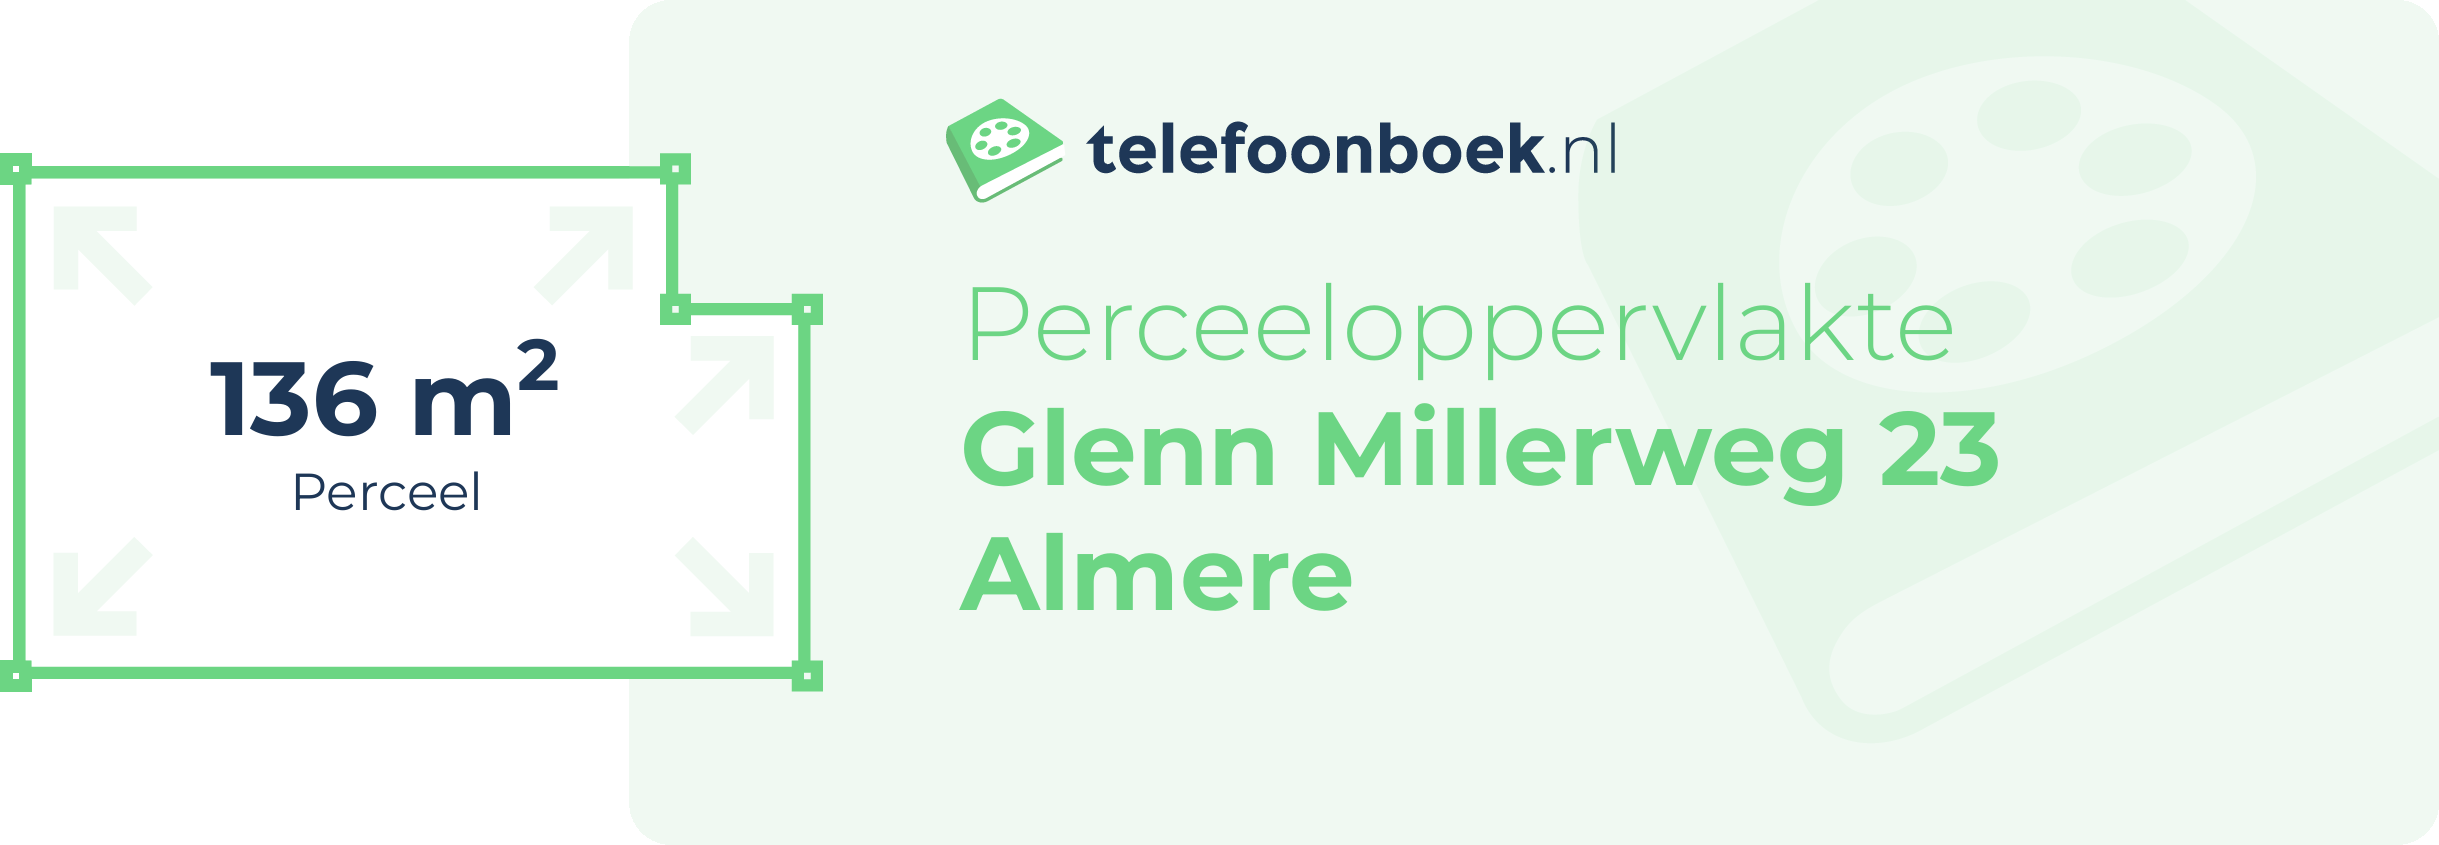 Perceeloppervlakte Glenn Millerweg 23 Almere